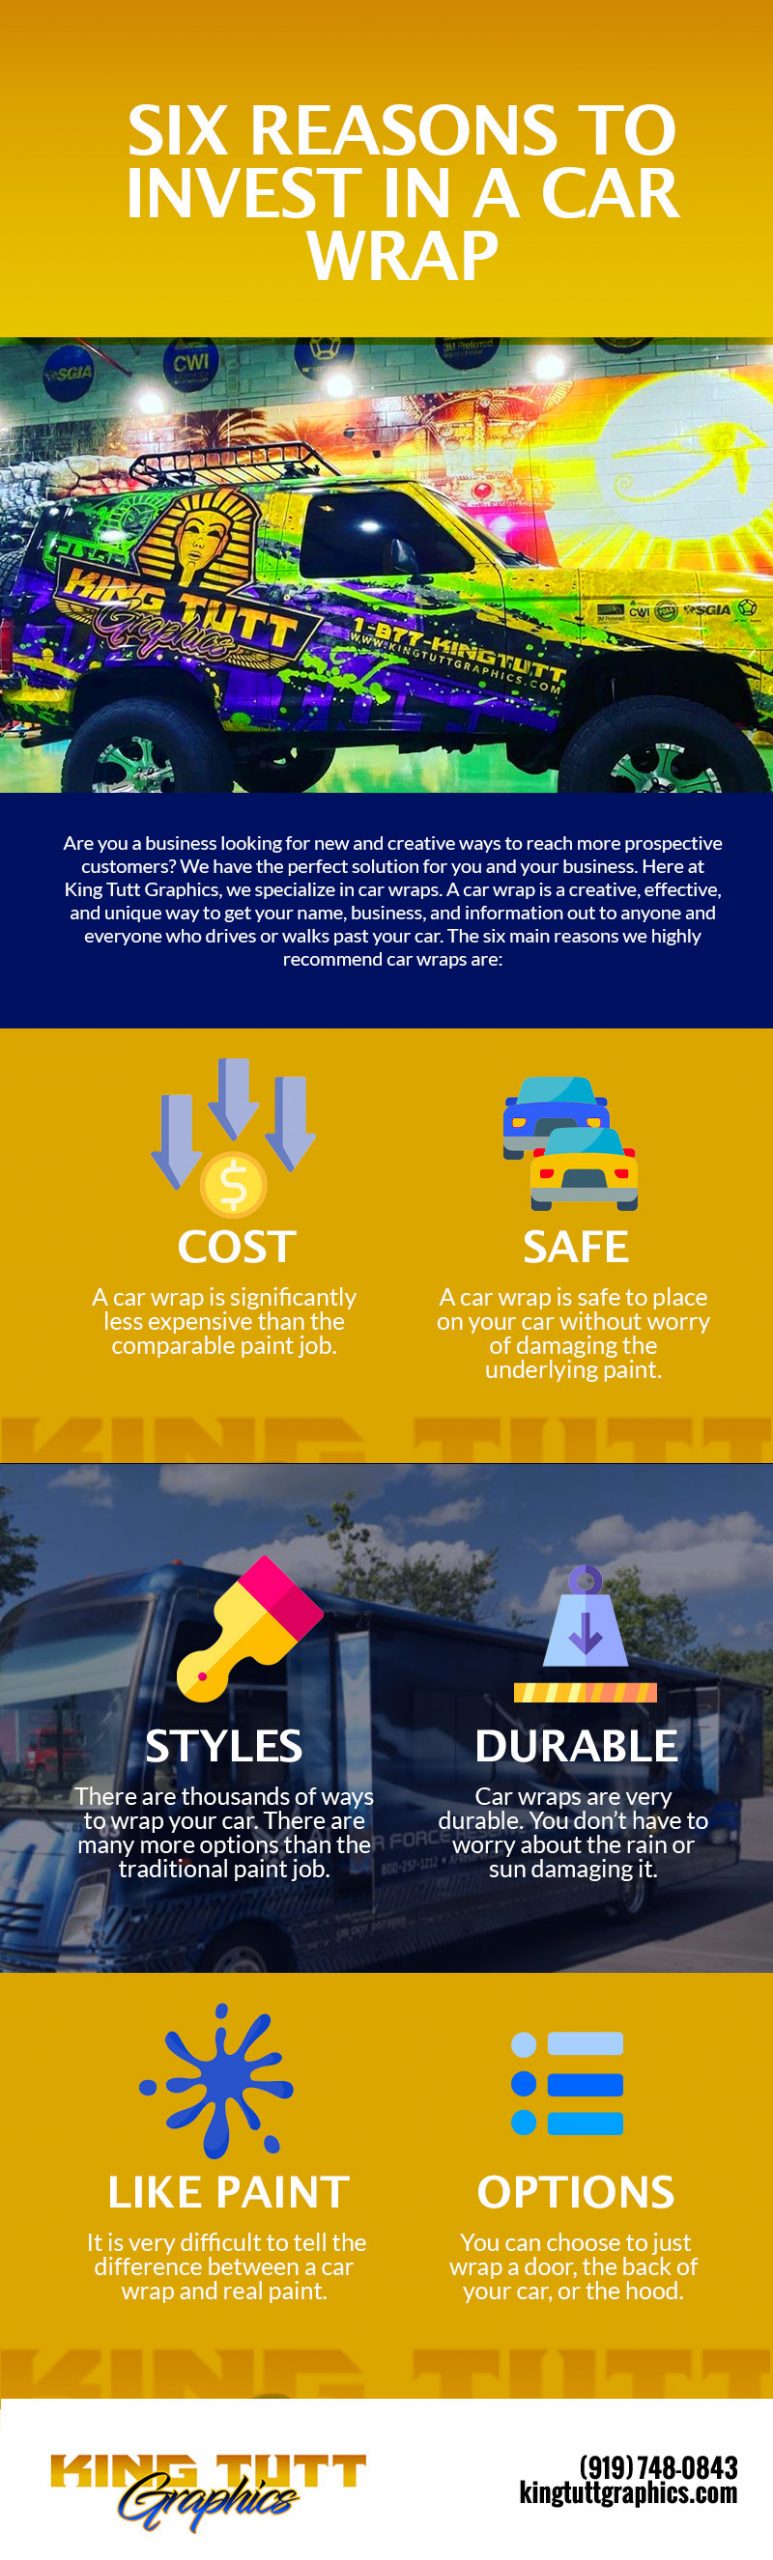 Six Benefits of Vehicle Wraps